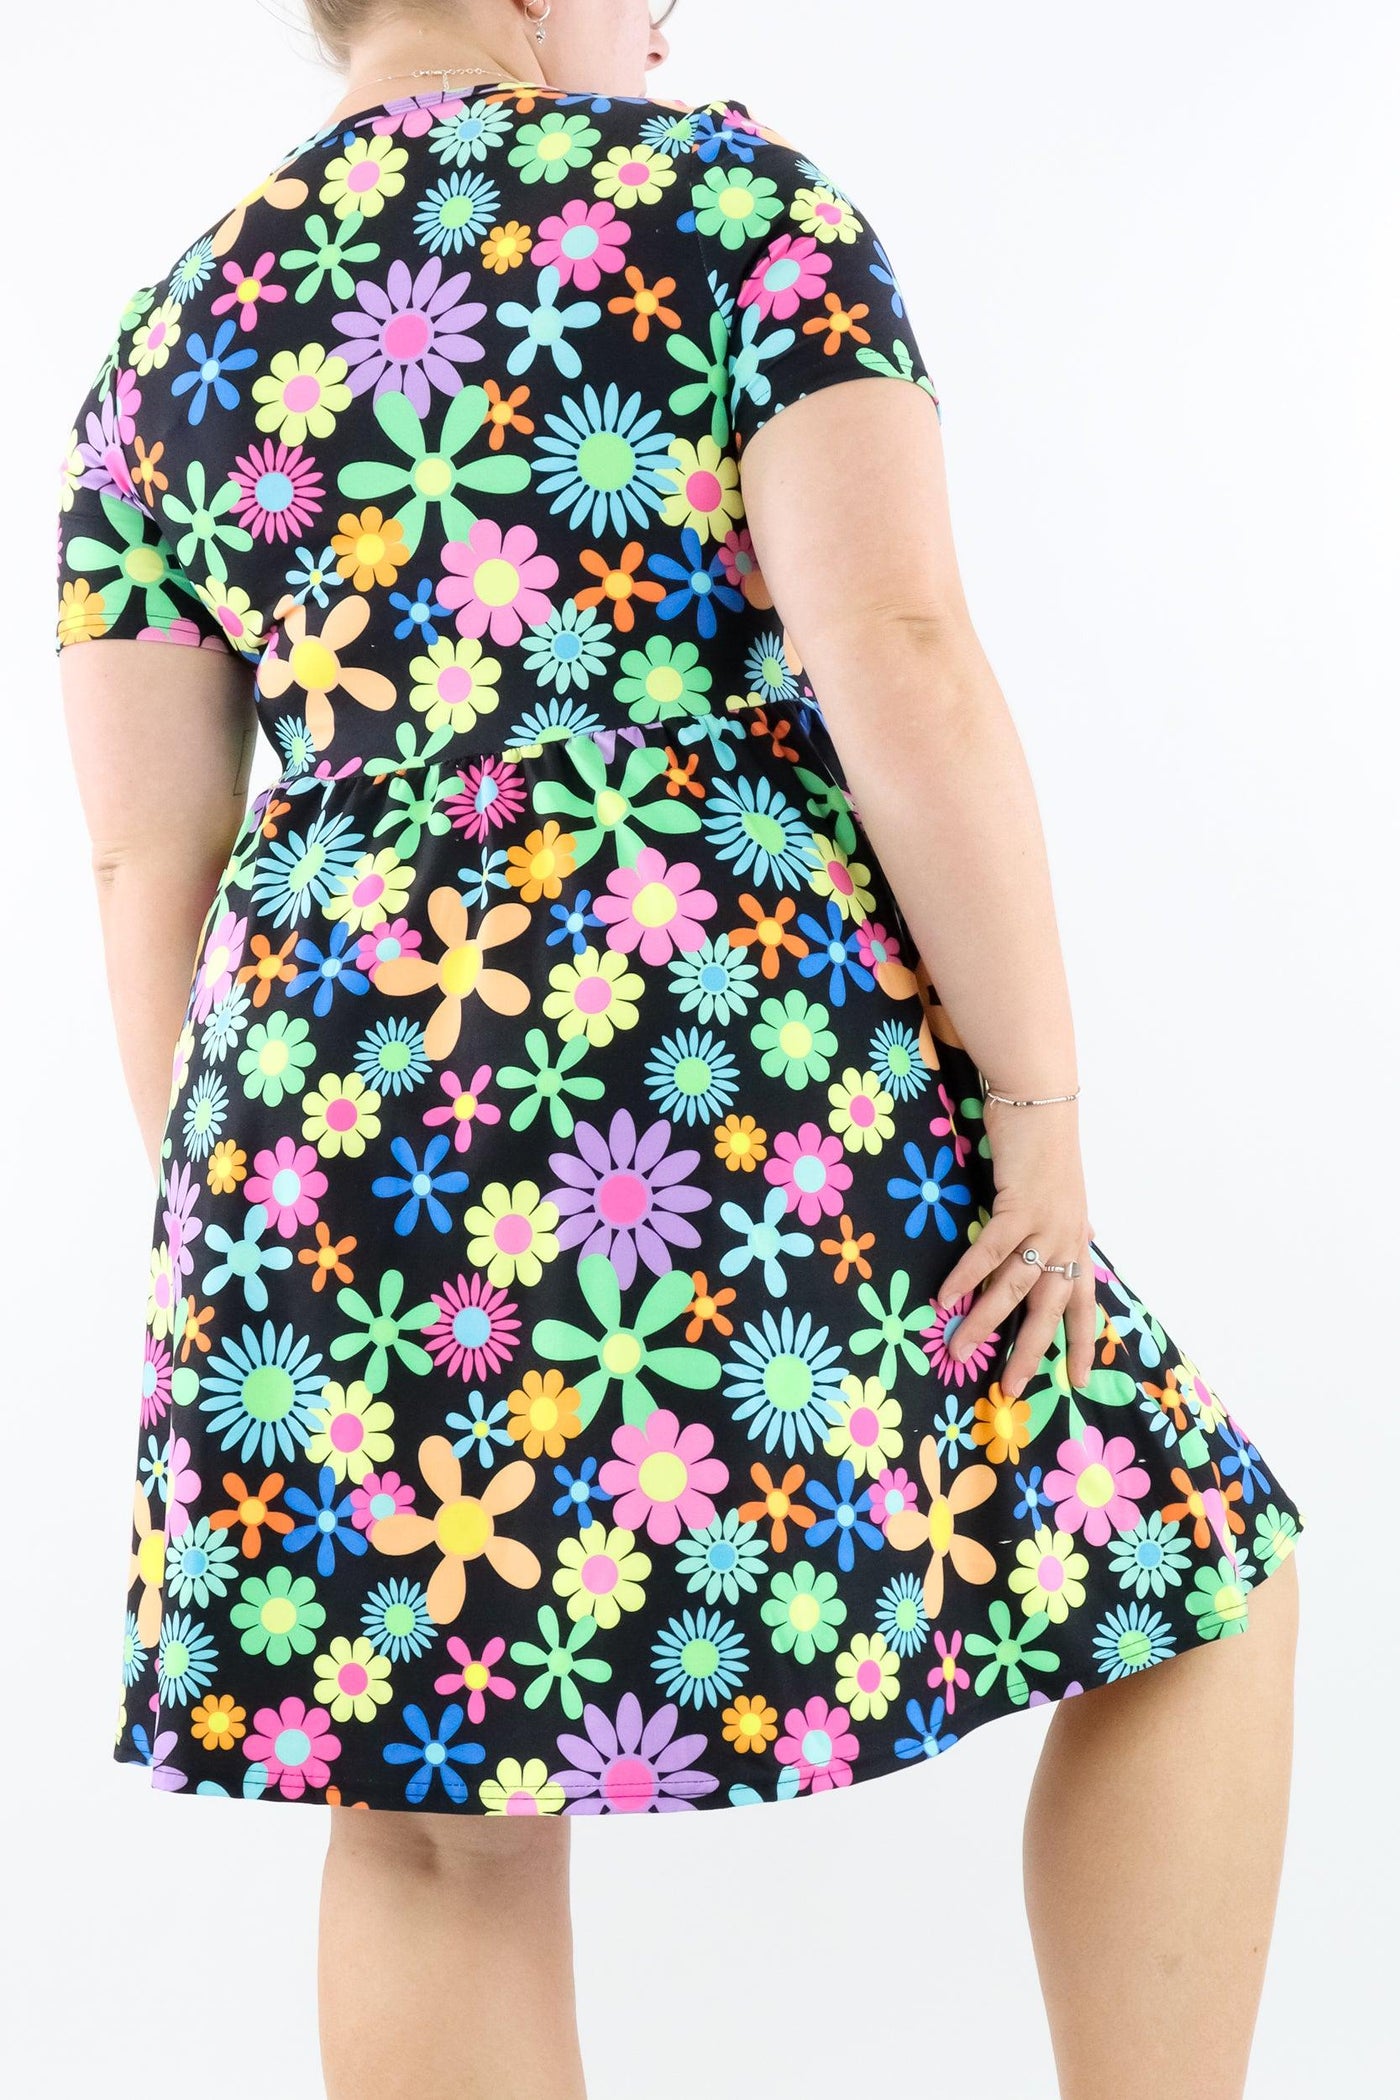 Flower Power - Short Sleeve Skater Dress - Knee Length - Side Pockets